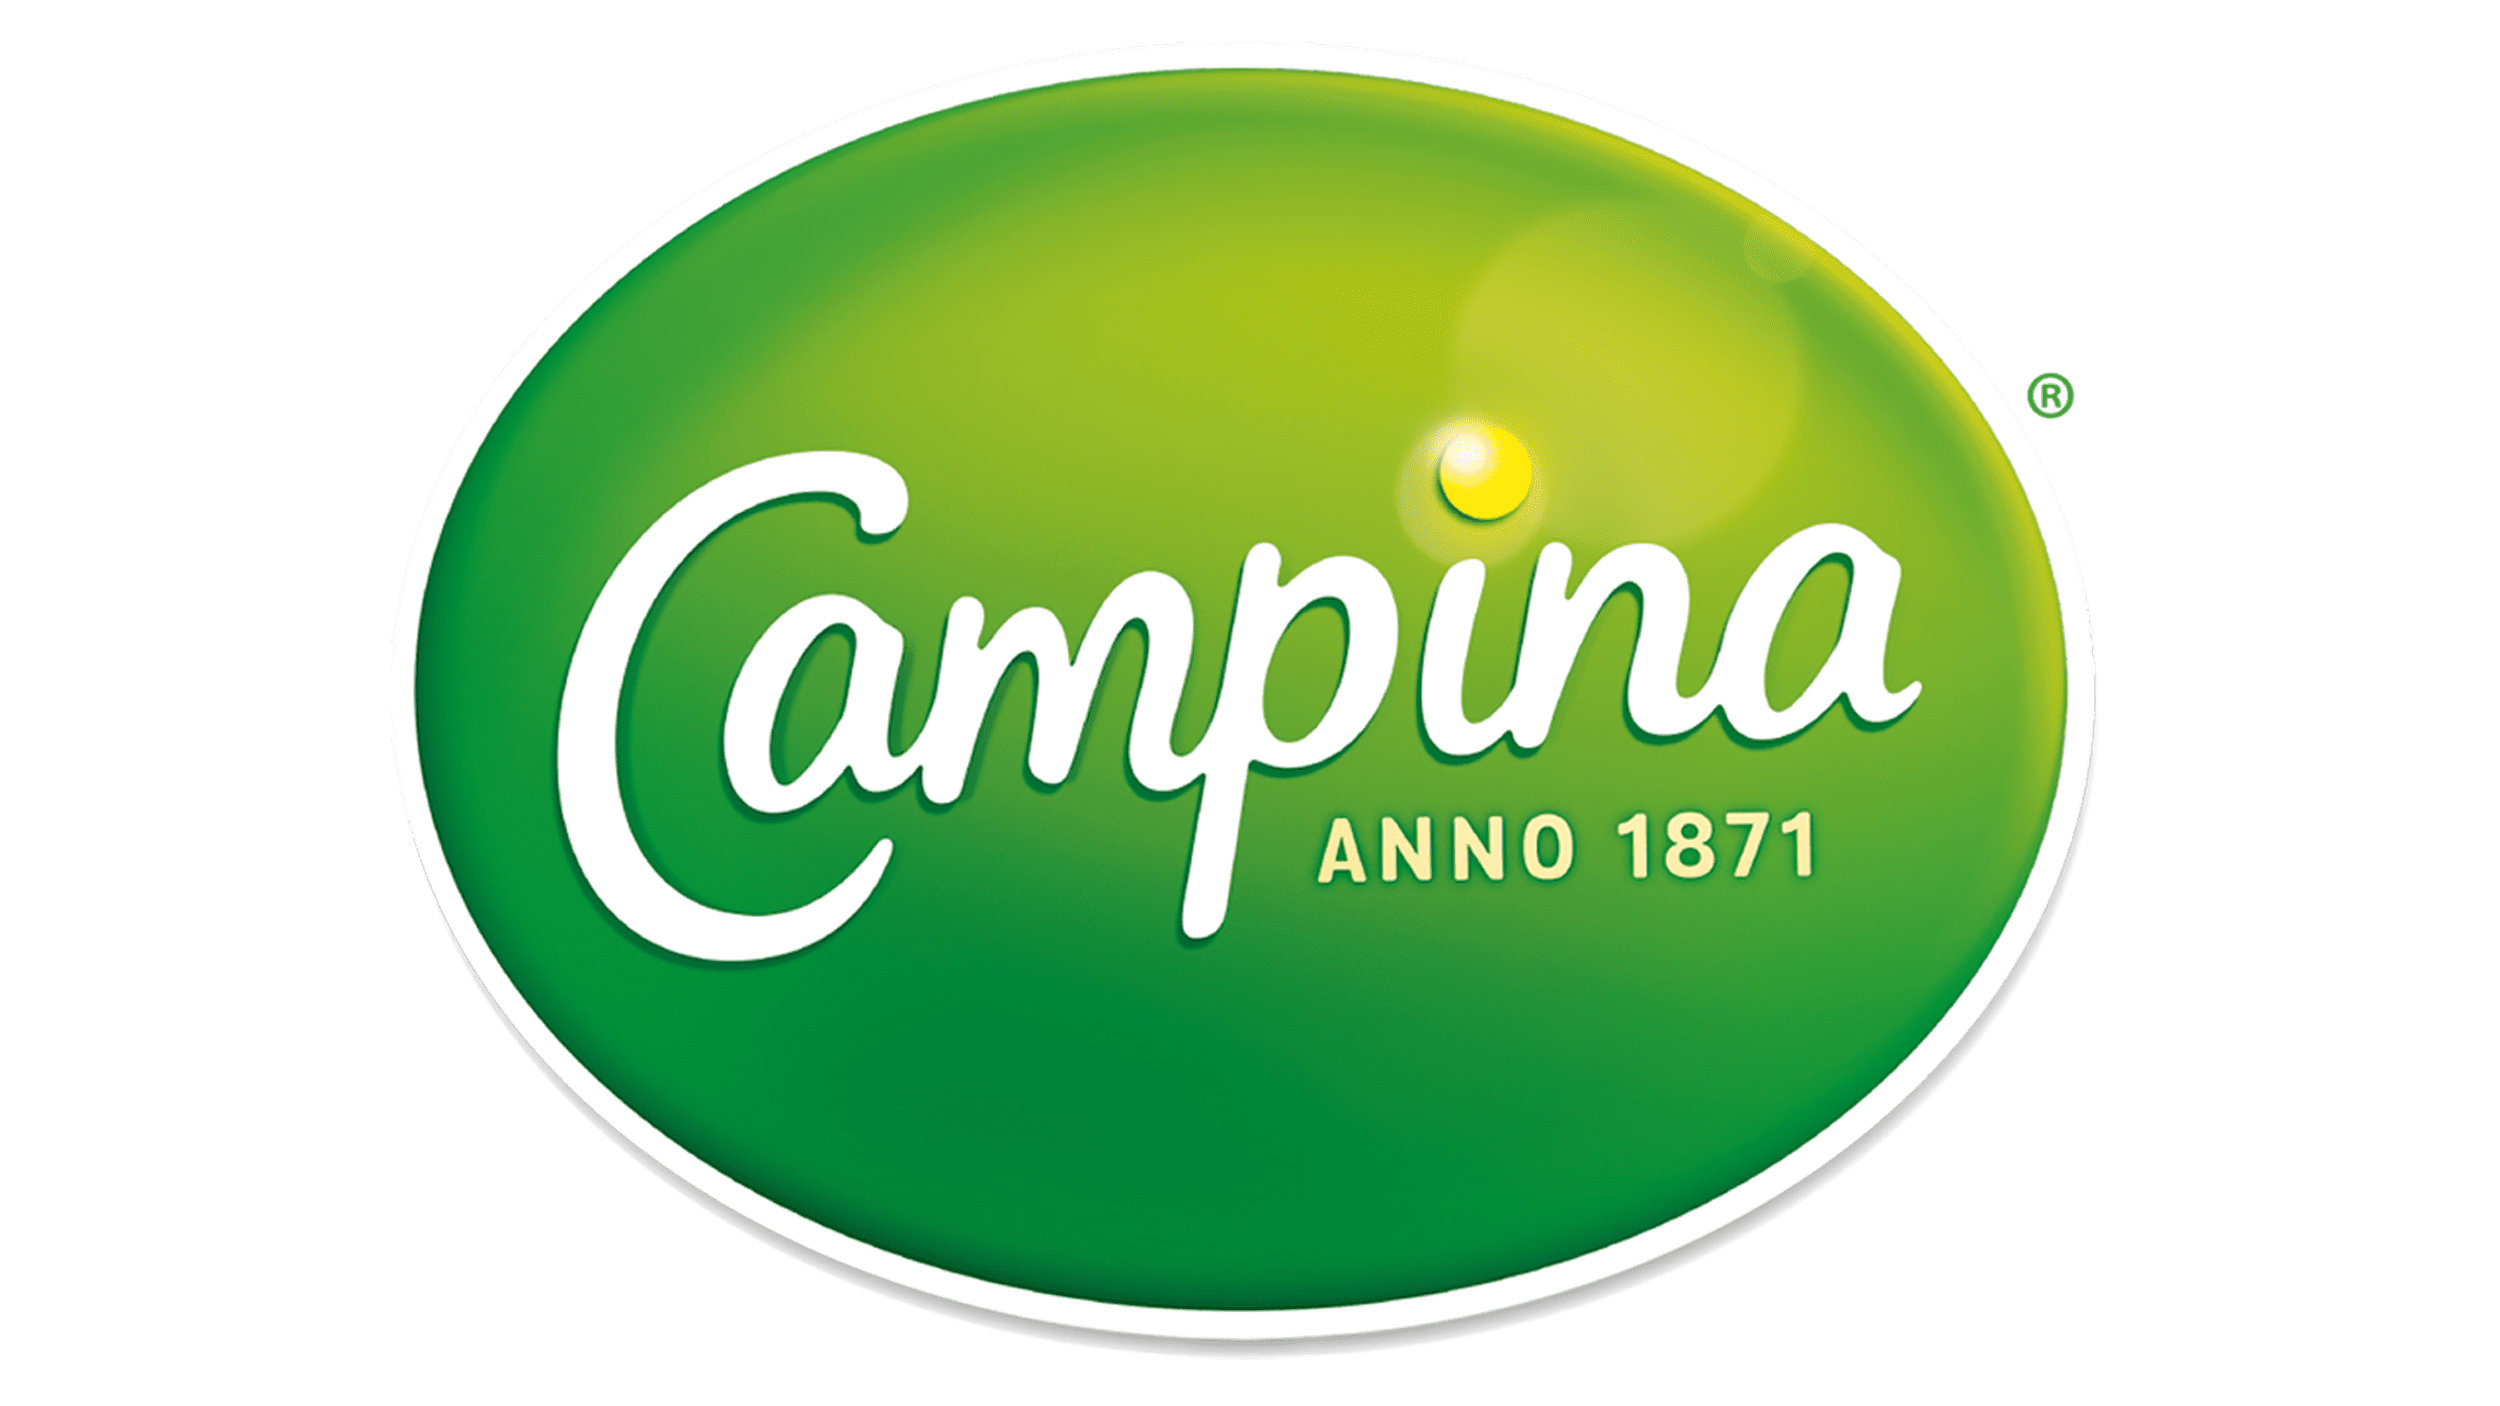 Campina Logo